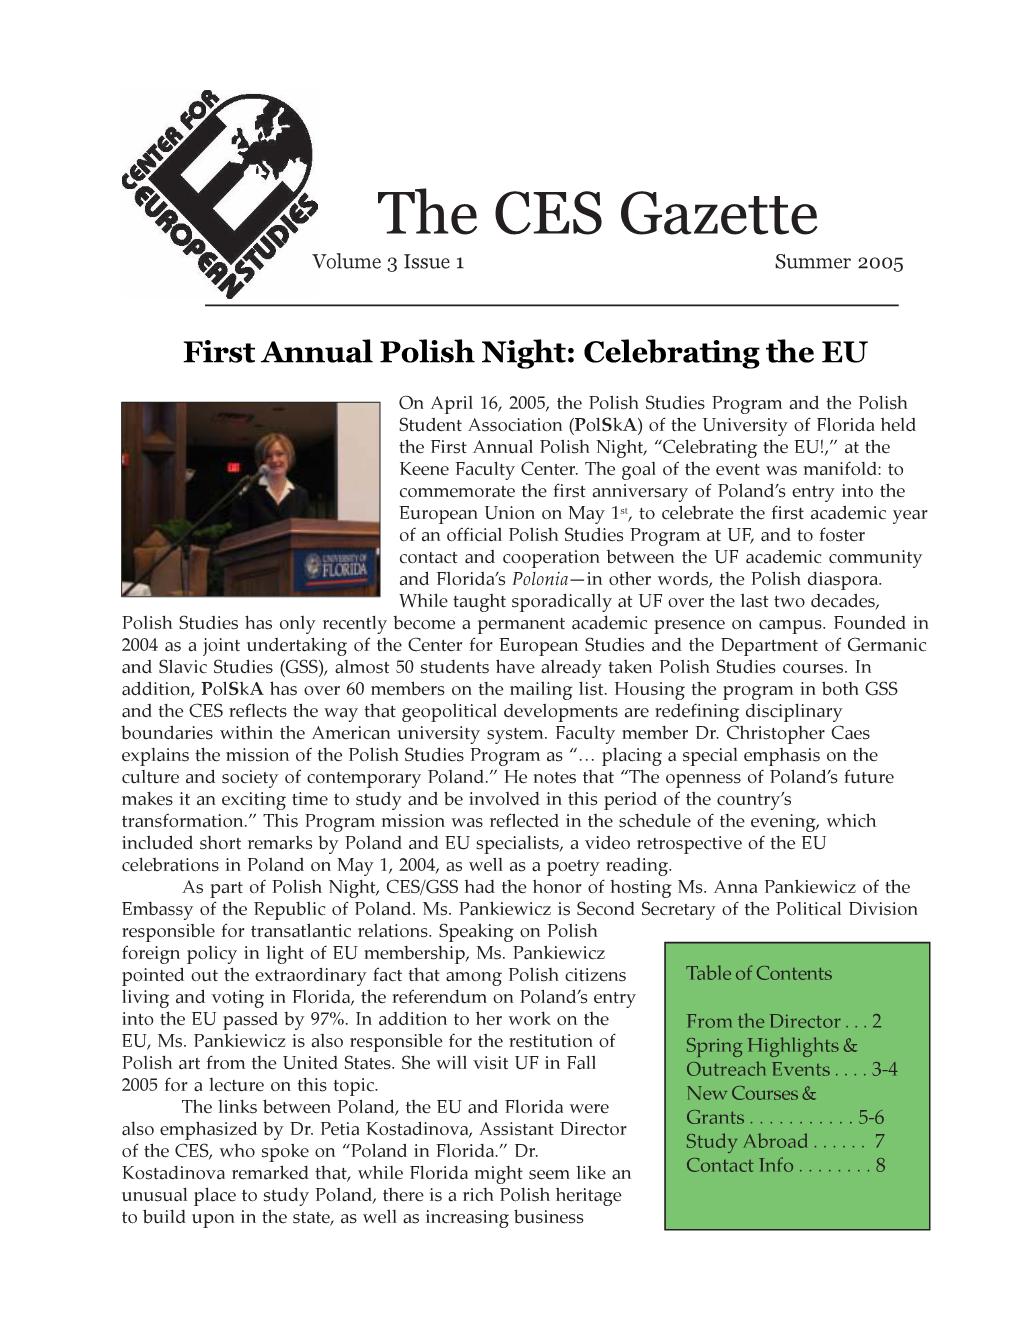 The CES Gazette Volume 3 Issue 1 Summer 2005